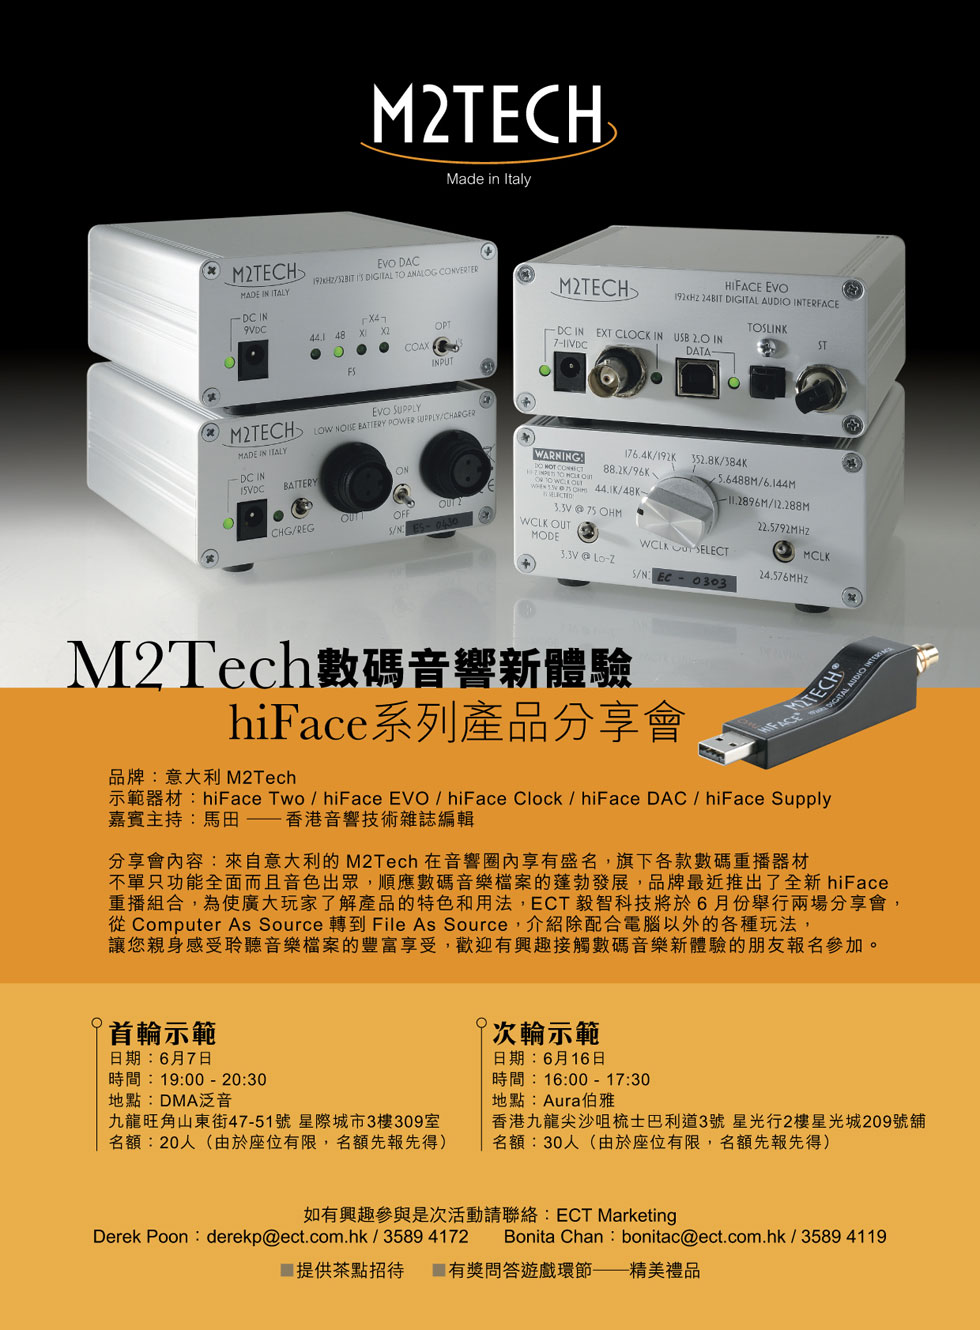 M2Tech hiFace 系列產品分享會